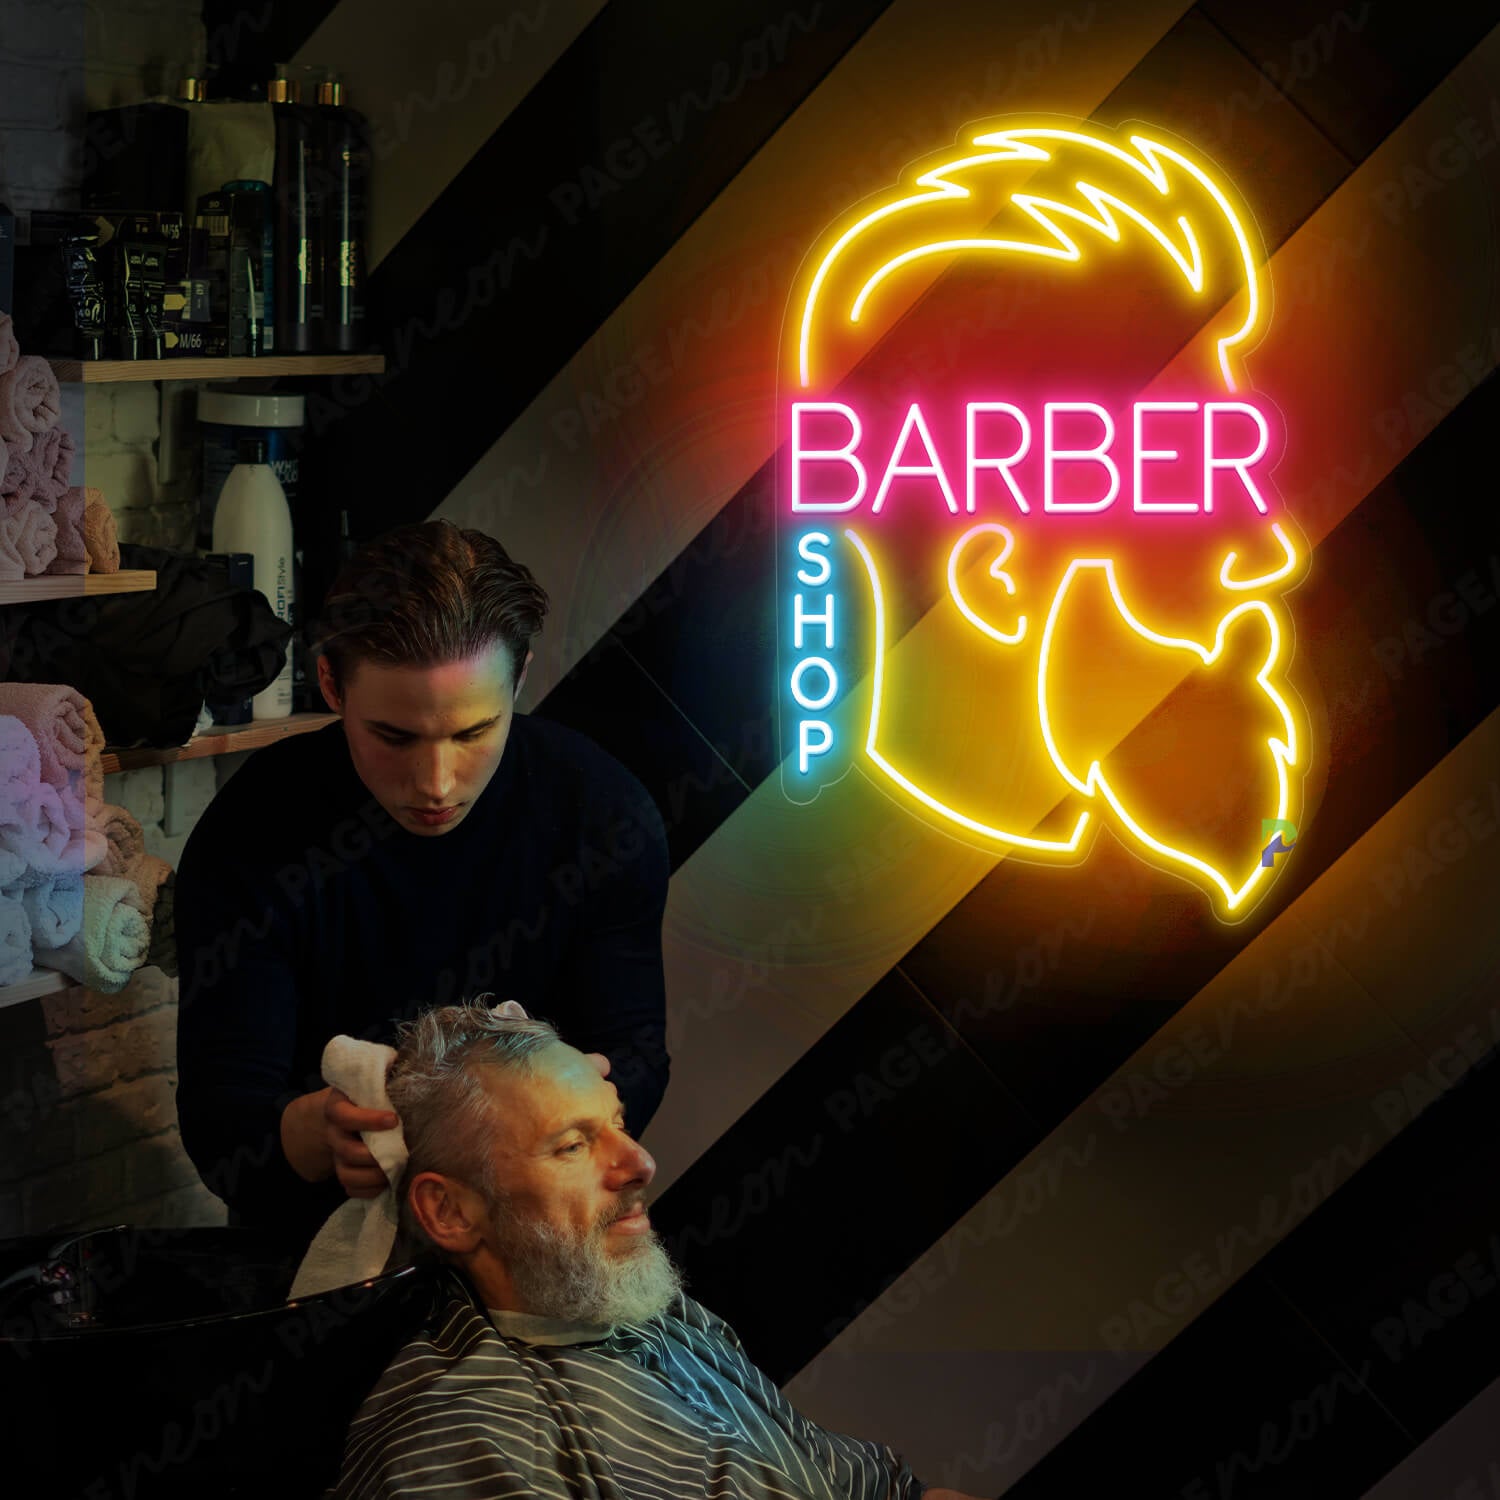 Man Barber Shop Neon Sign Led Light Pink